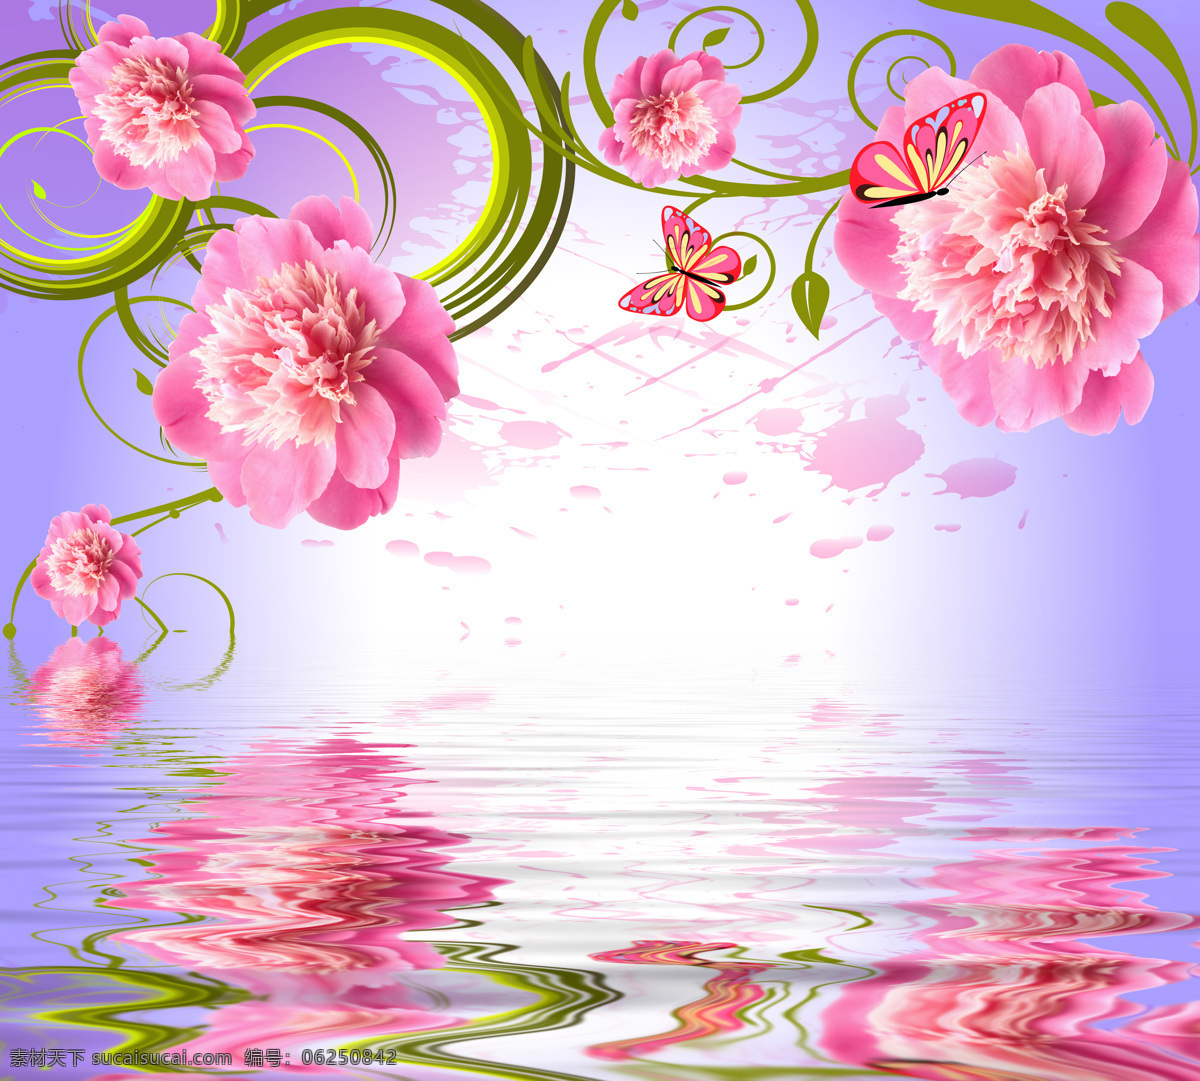 镜 中 花 装饰画 效果图 花朵 粉色 水中 装饰图